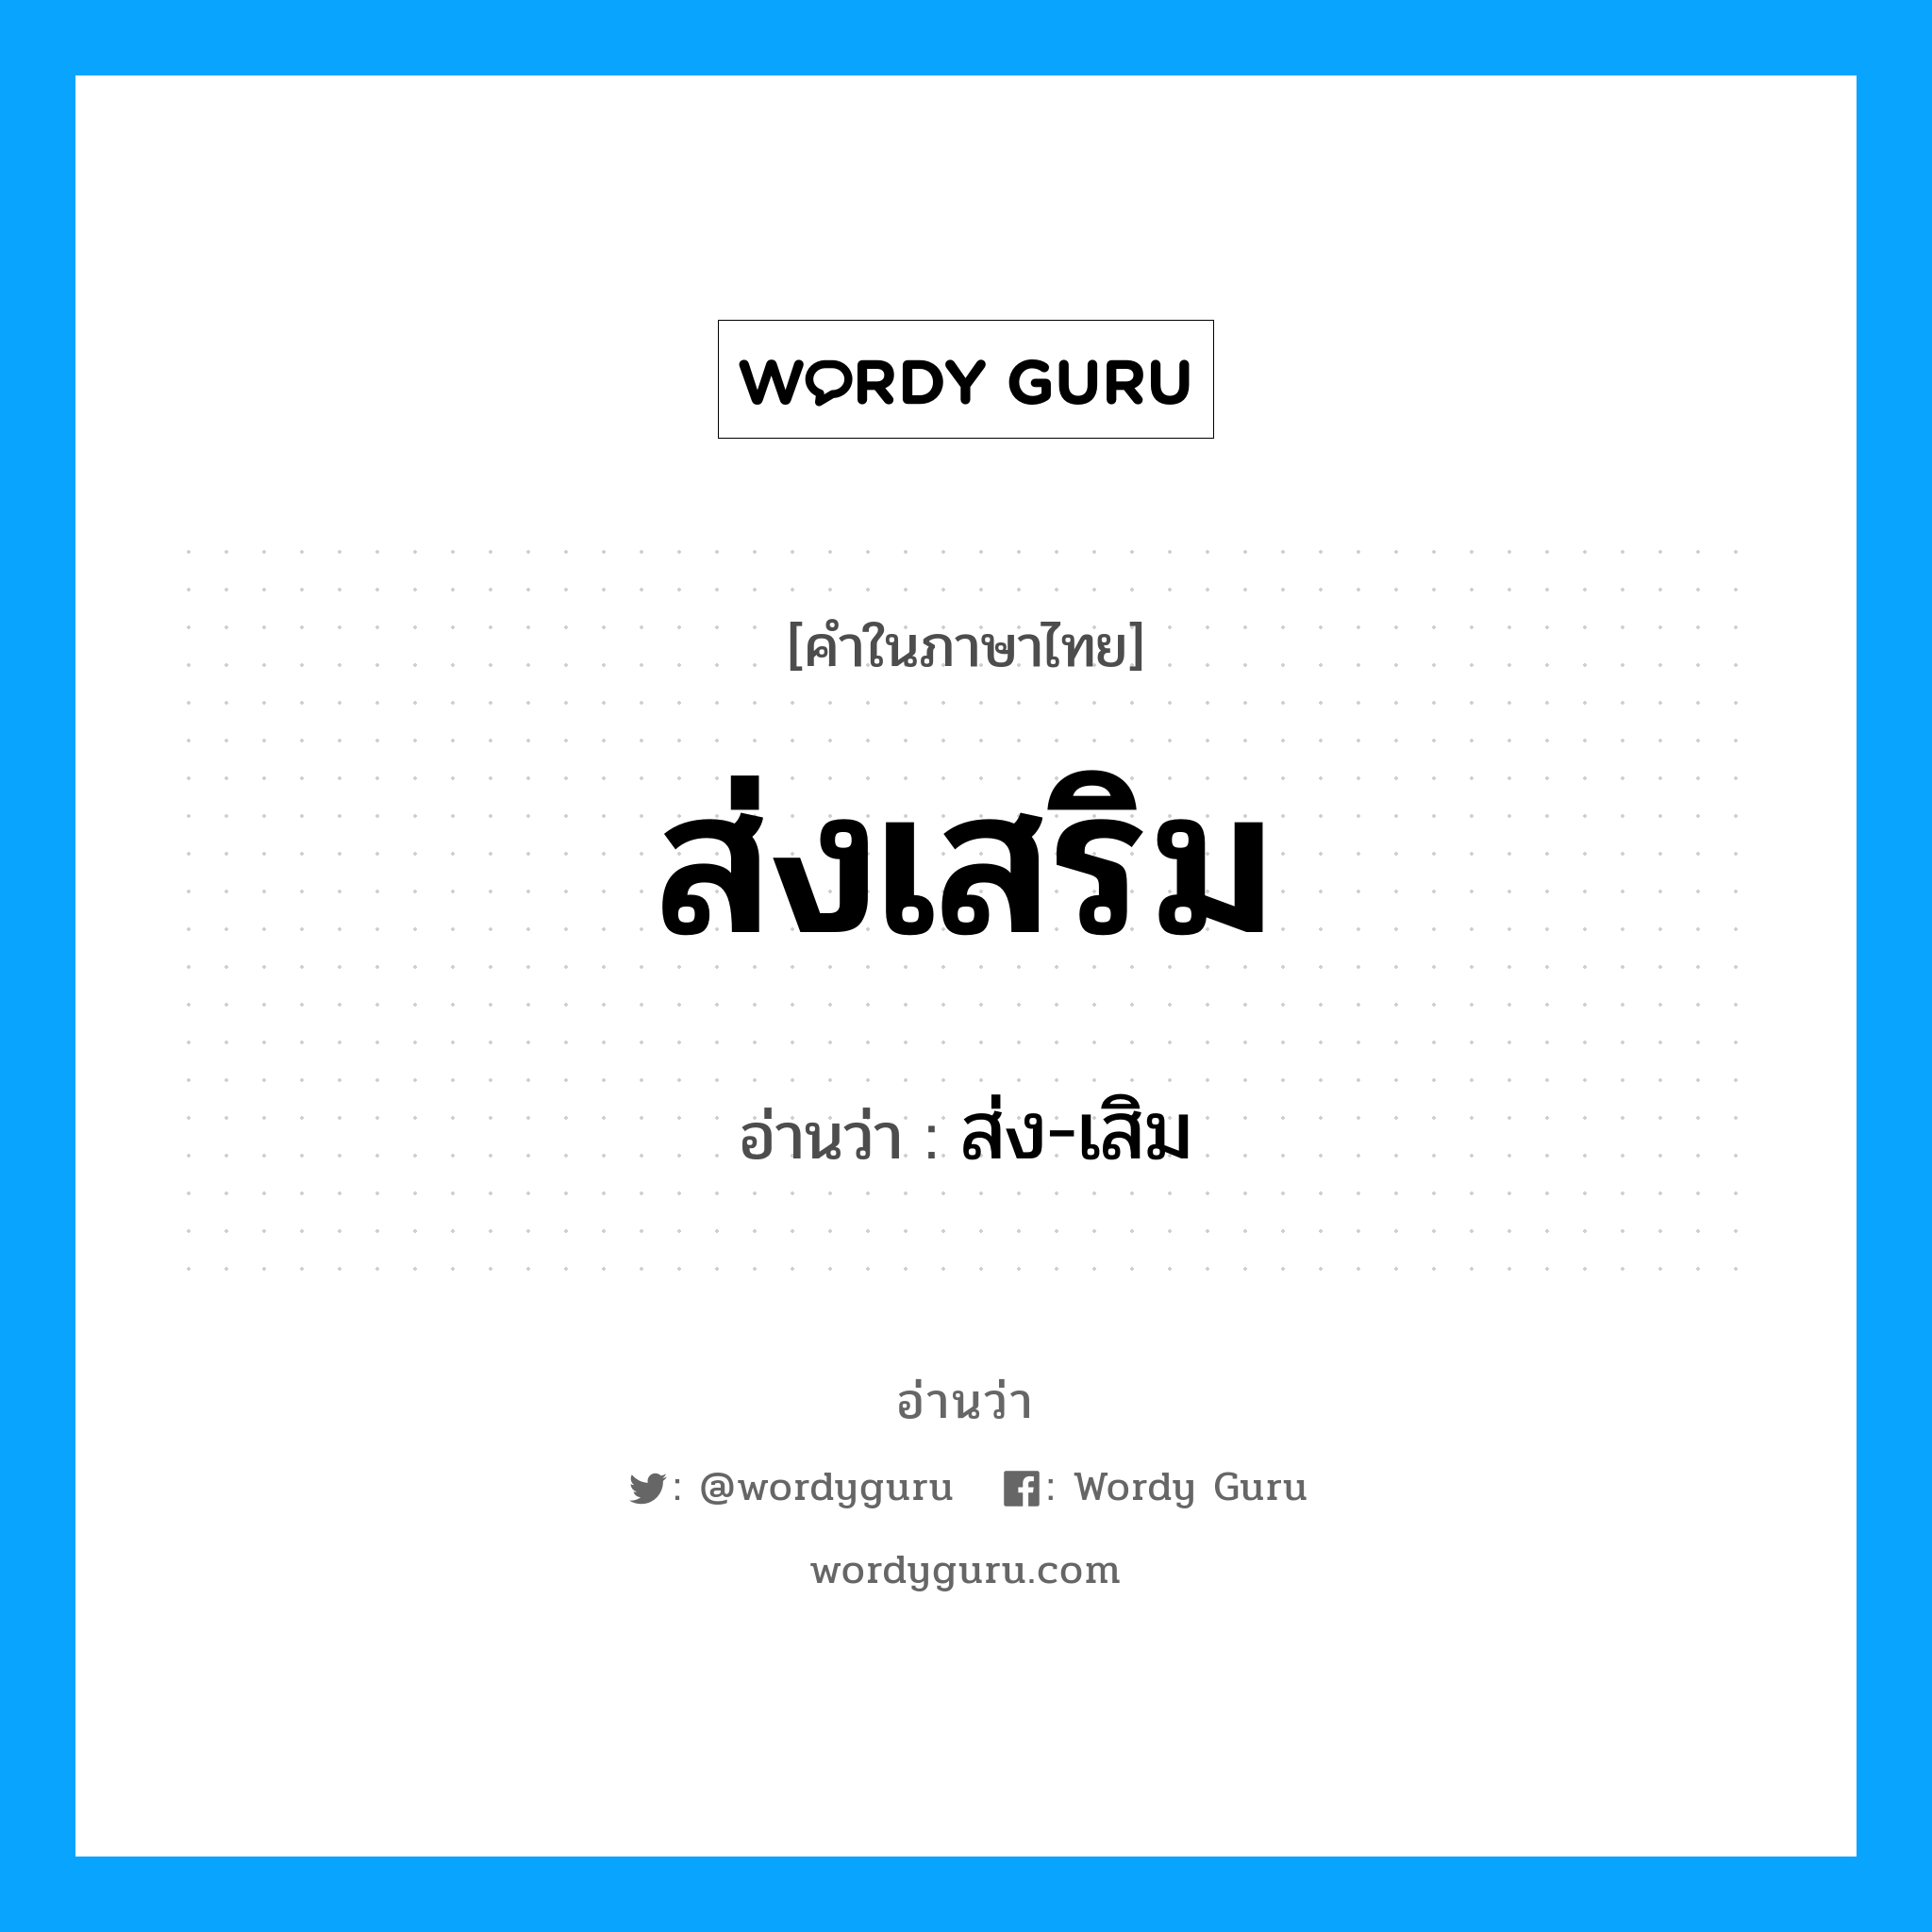 ส่ง-เสิม เป็นคำอ่านของคำไหน?, คำในภาษาไทย ส่ง-เสิม อ่านว่า ส่งเสริม